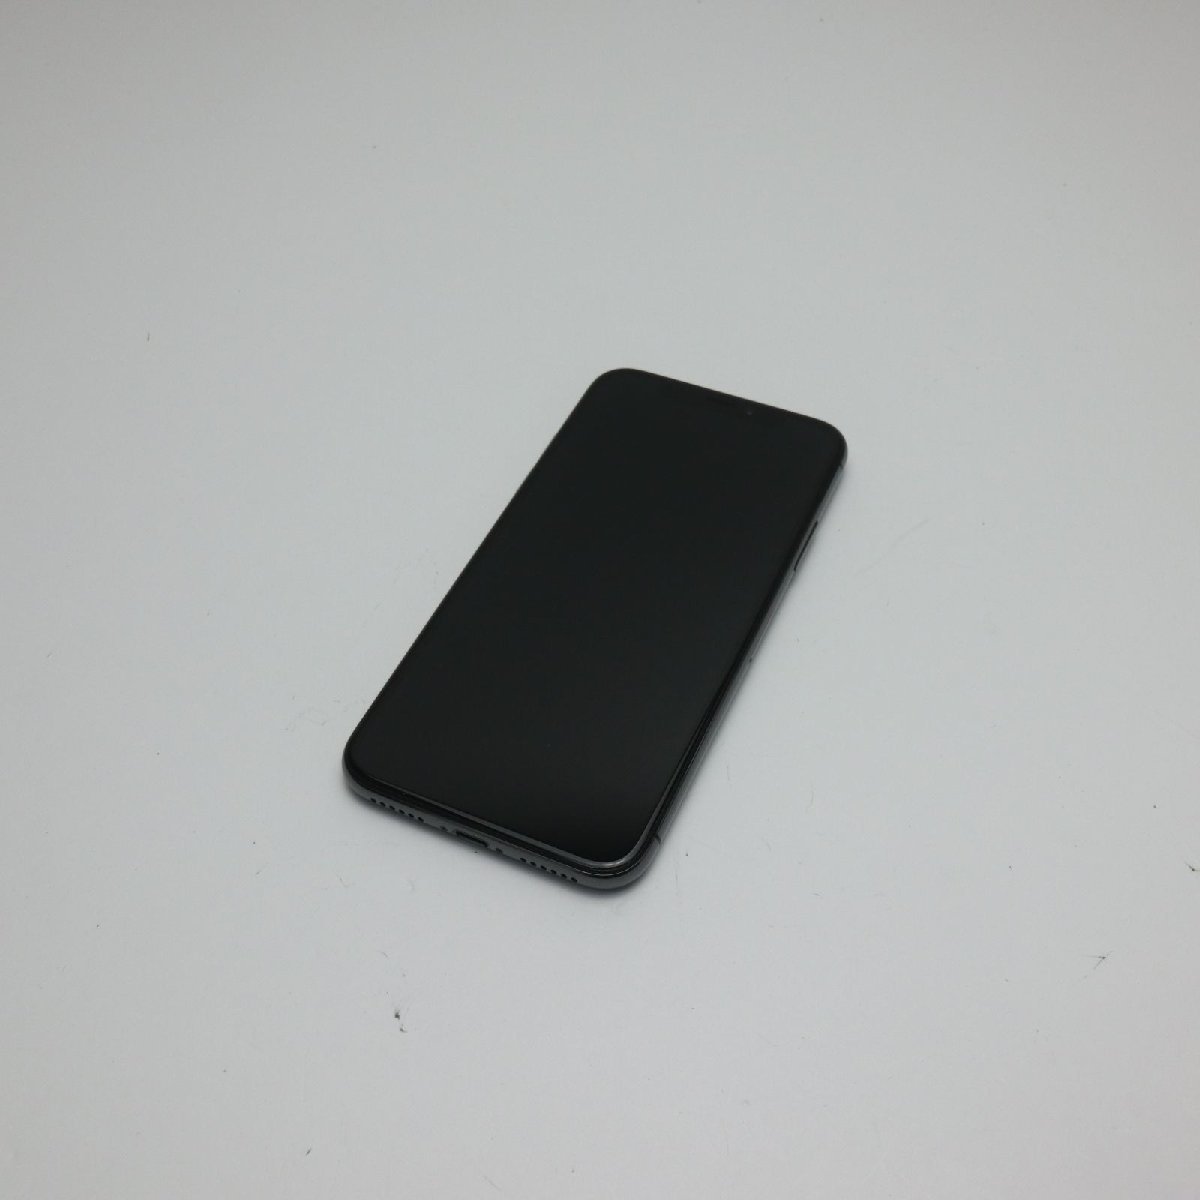 経典 新品同様 SIMフリー iPhoneX 64GB スペースグレイ スマホ 即日